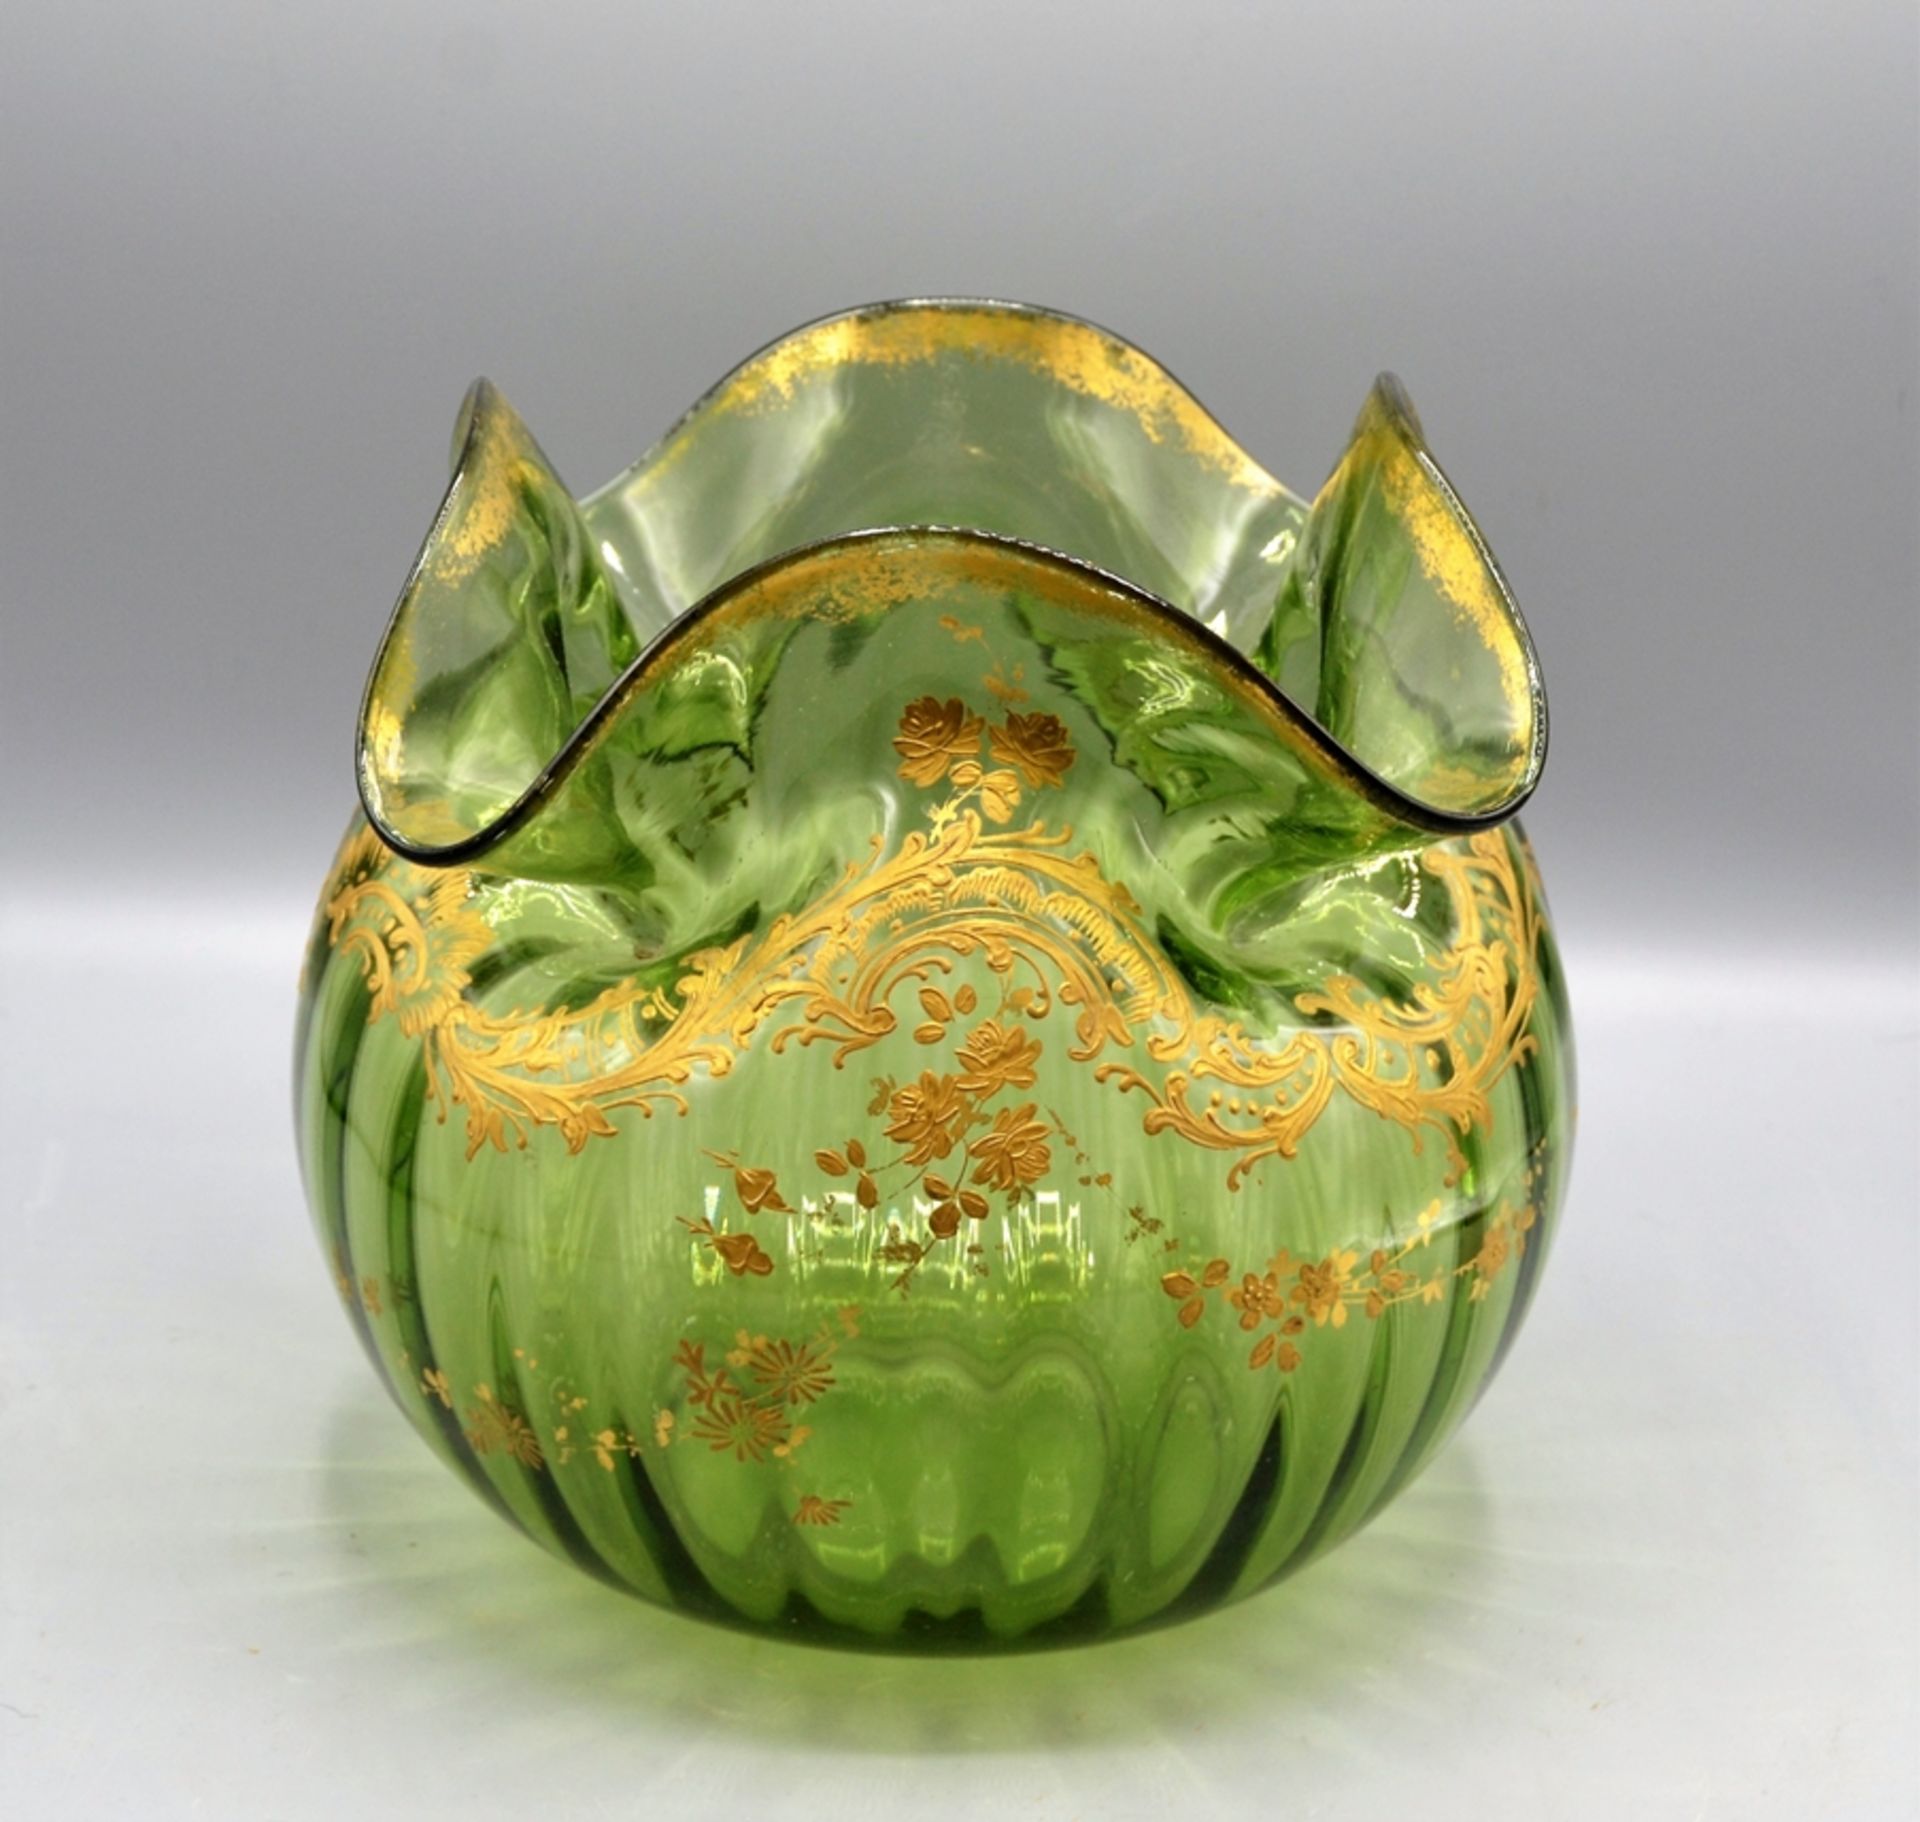 Prunkvase grün um 1900, grünes längsoptisches Glas, Rand geschweift, reicher Golddekor (Rocaillen, 